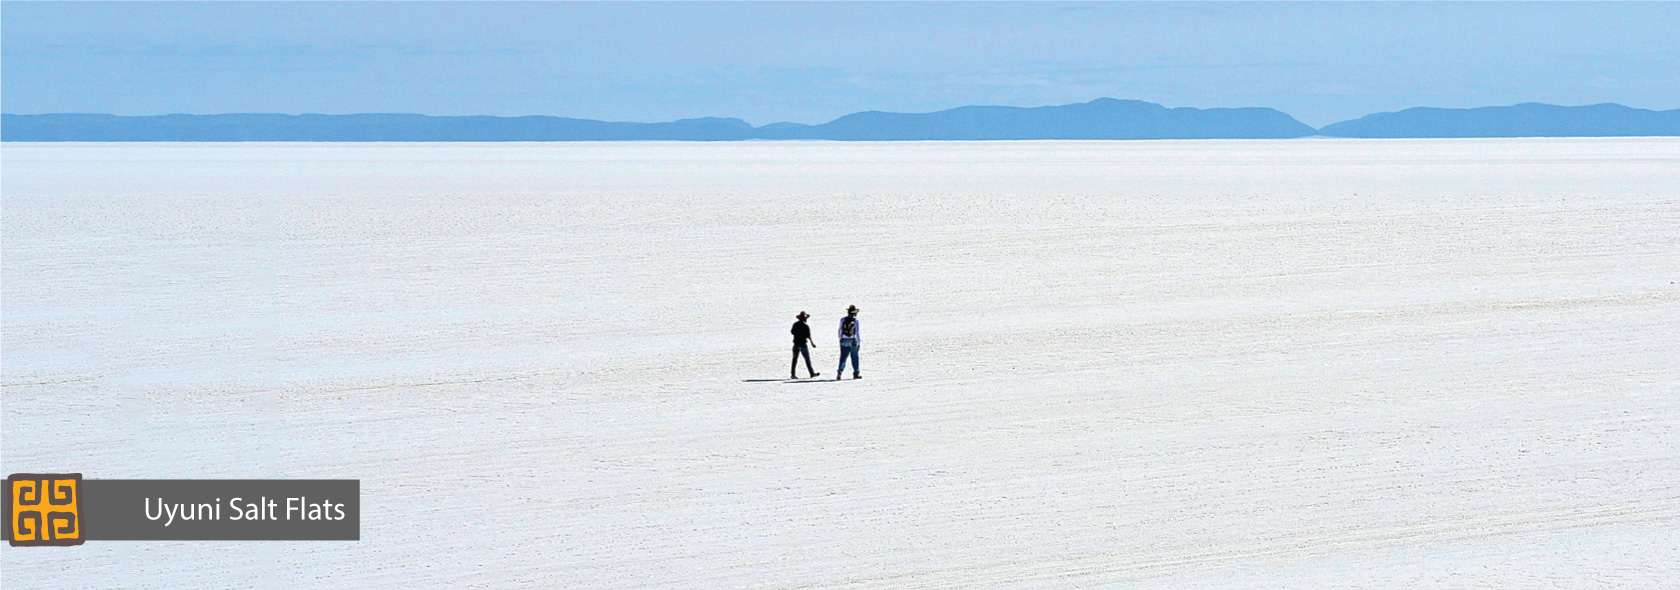 Uyuni-Salt-Flats